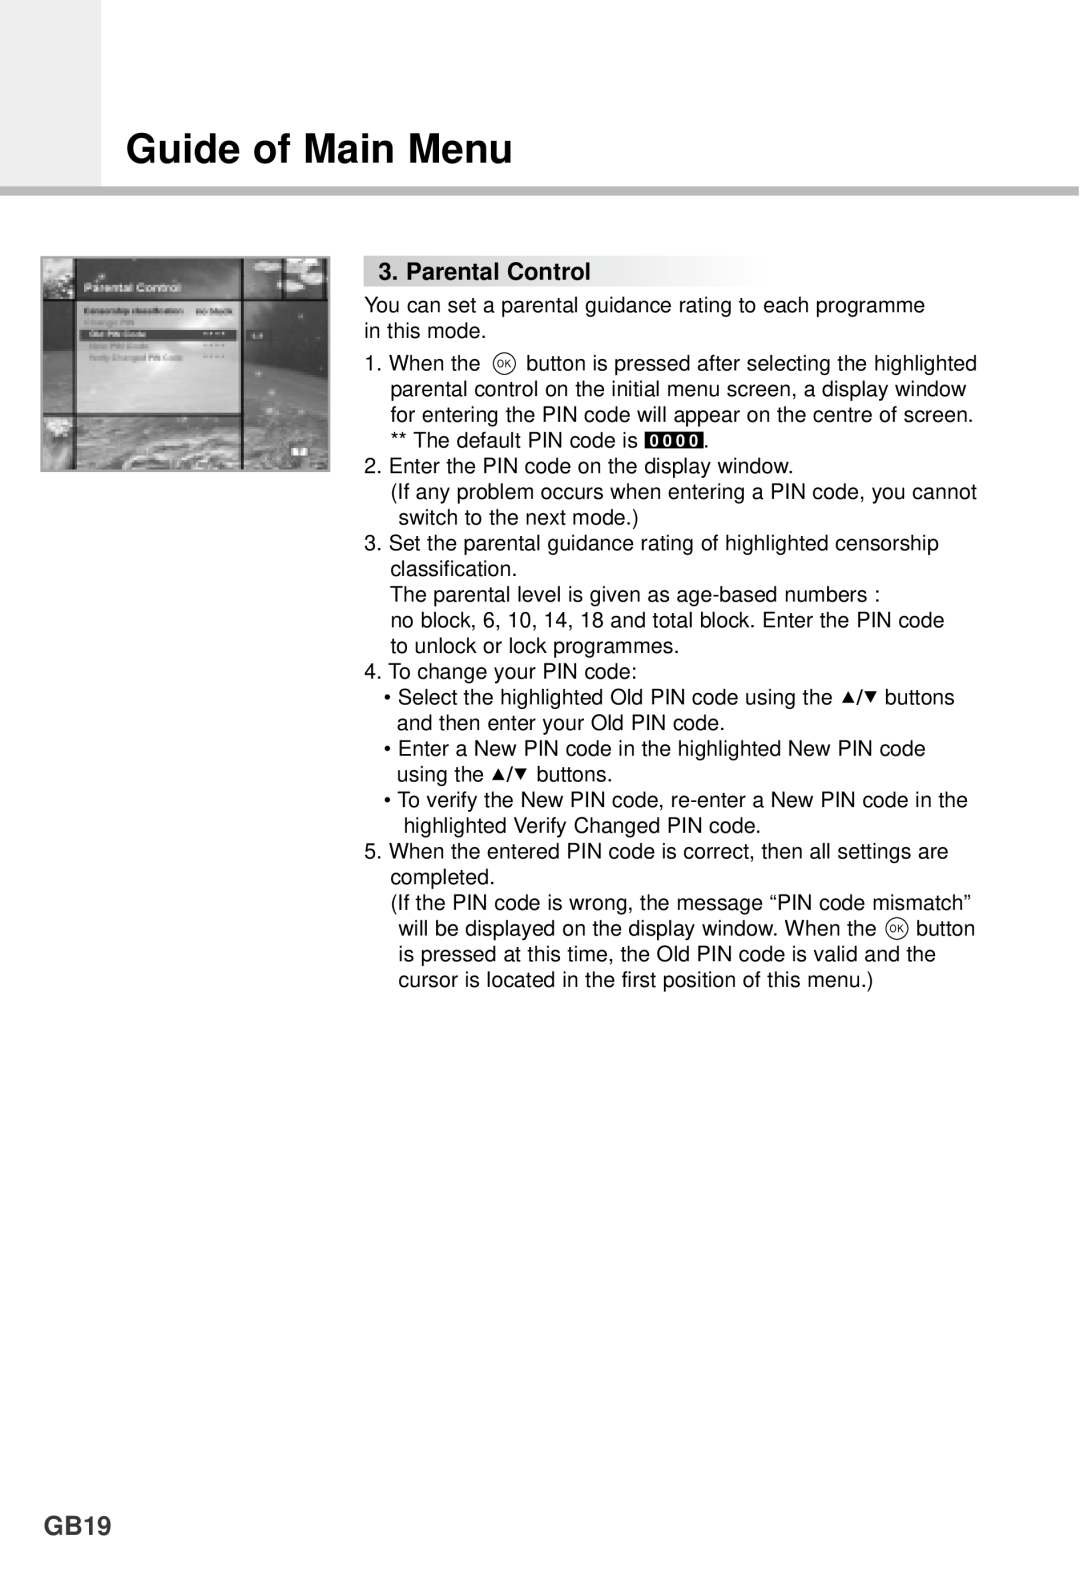 Humax F1-4000T manual GB19, Guide of Main Menu, ParentalControl 